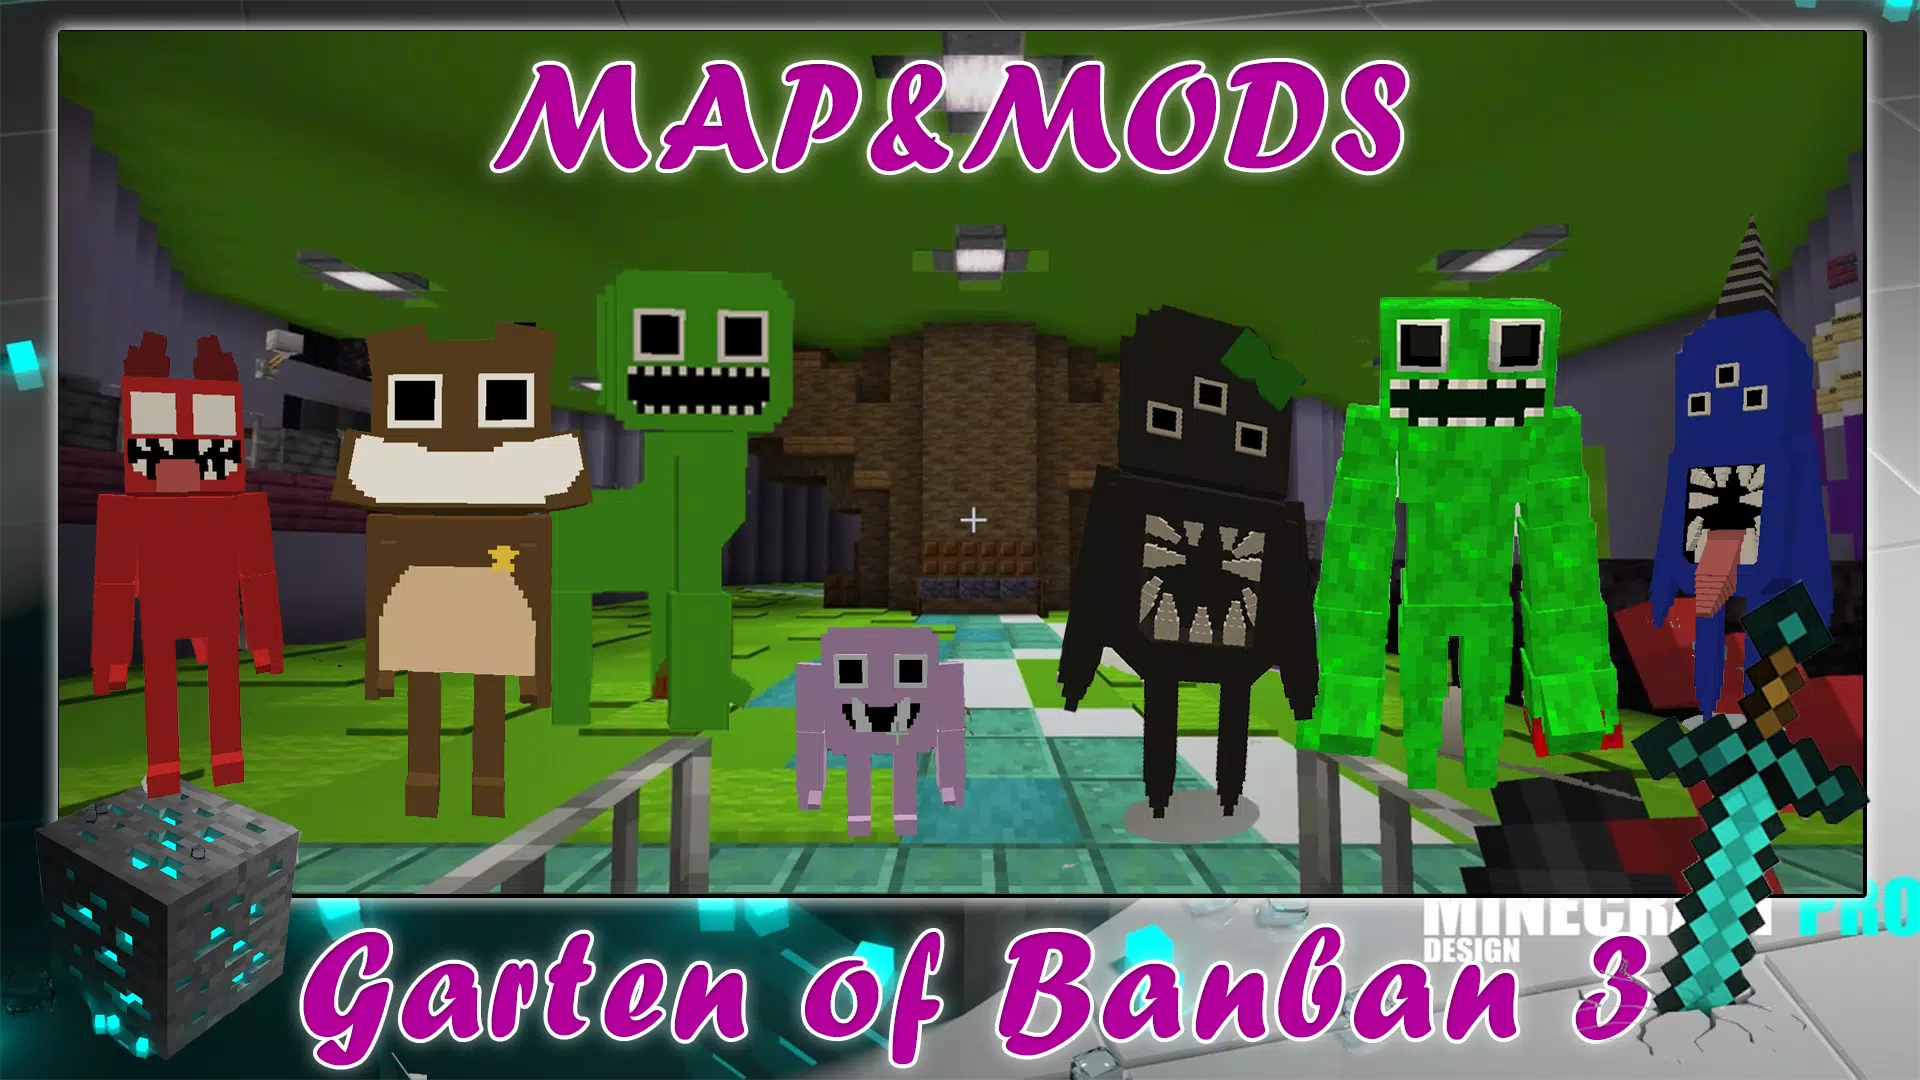 Garten of Banban 3 Mod Apk 1.0 (Full Game)